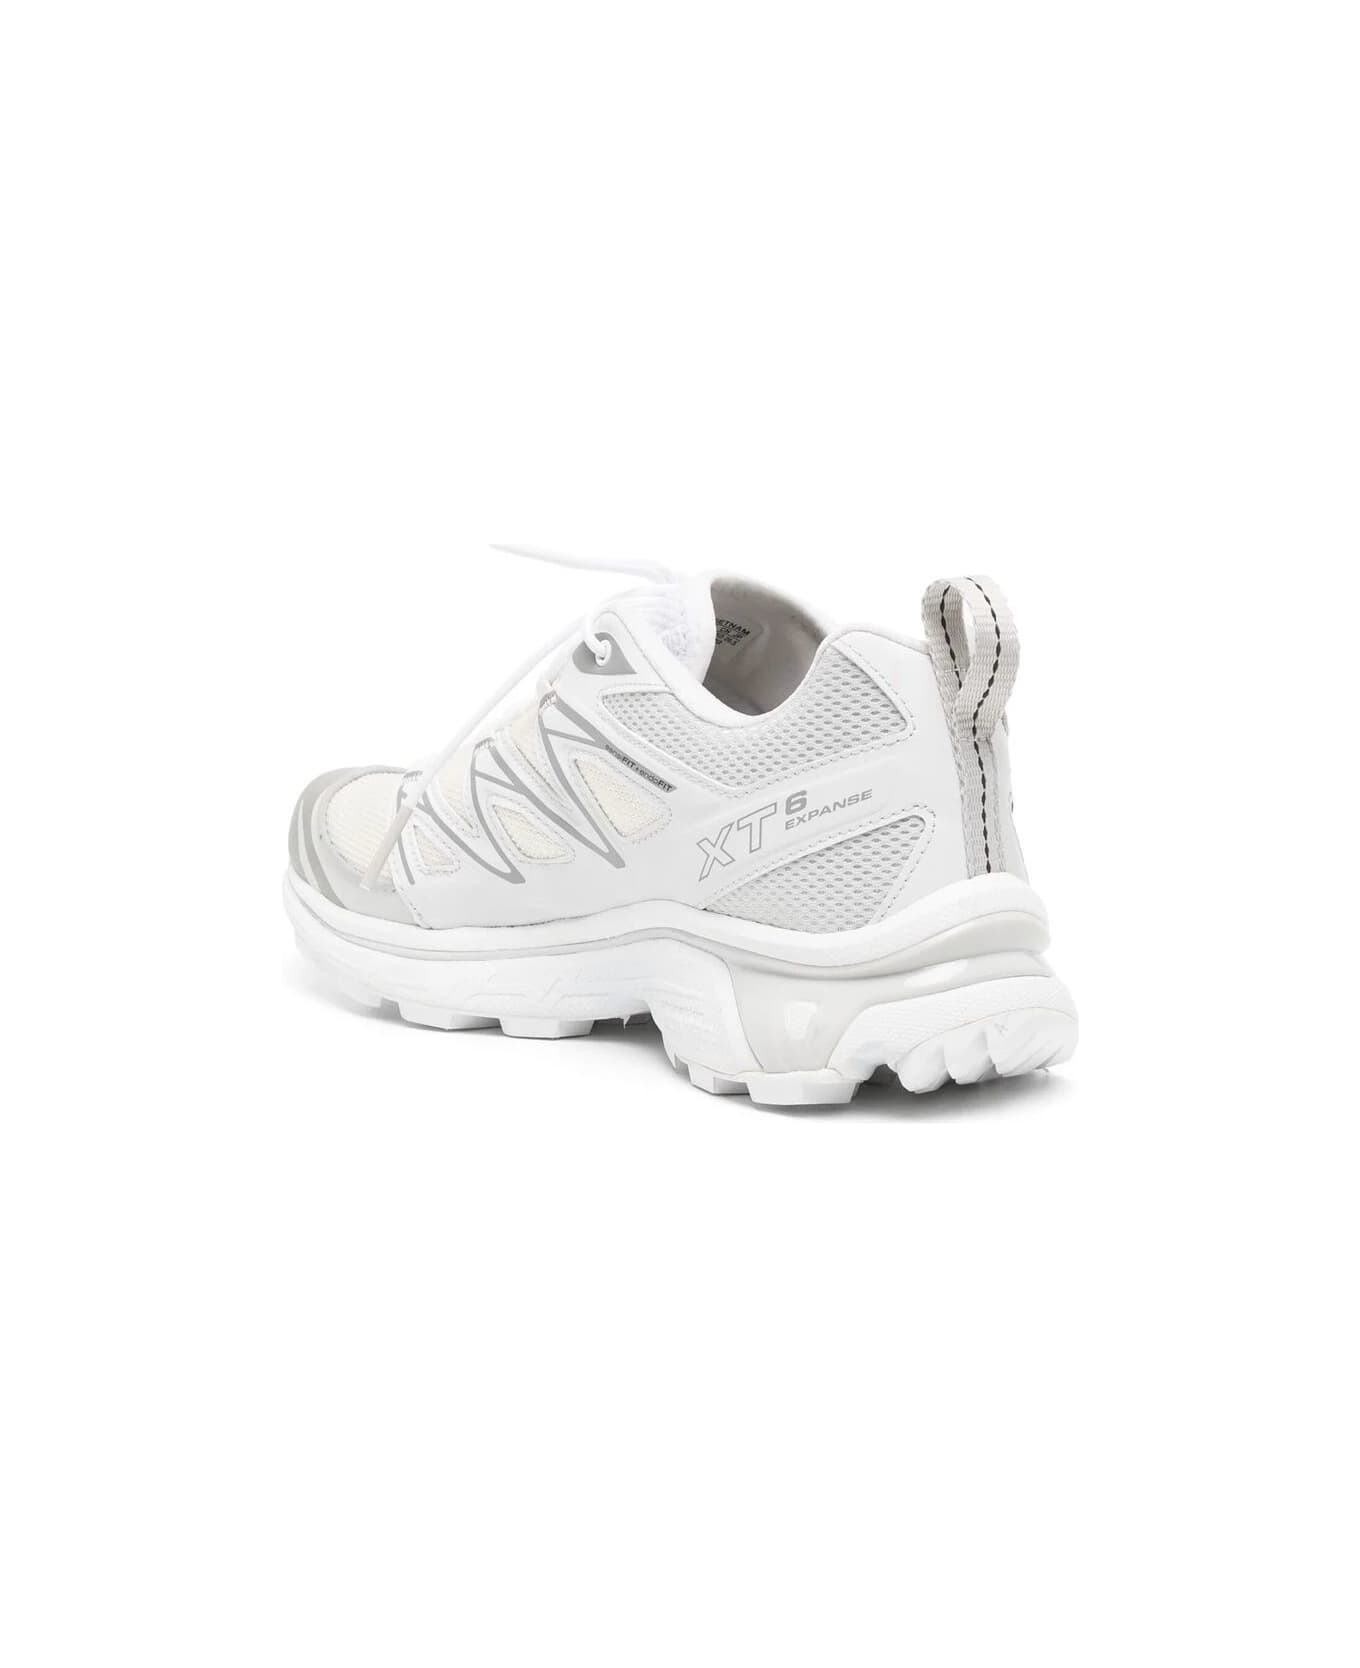 Salomon Xt-6 Expanse Sneakers - Vanilla Ice White Alloy